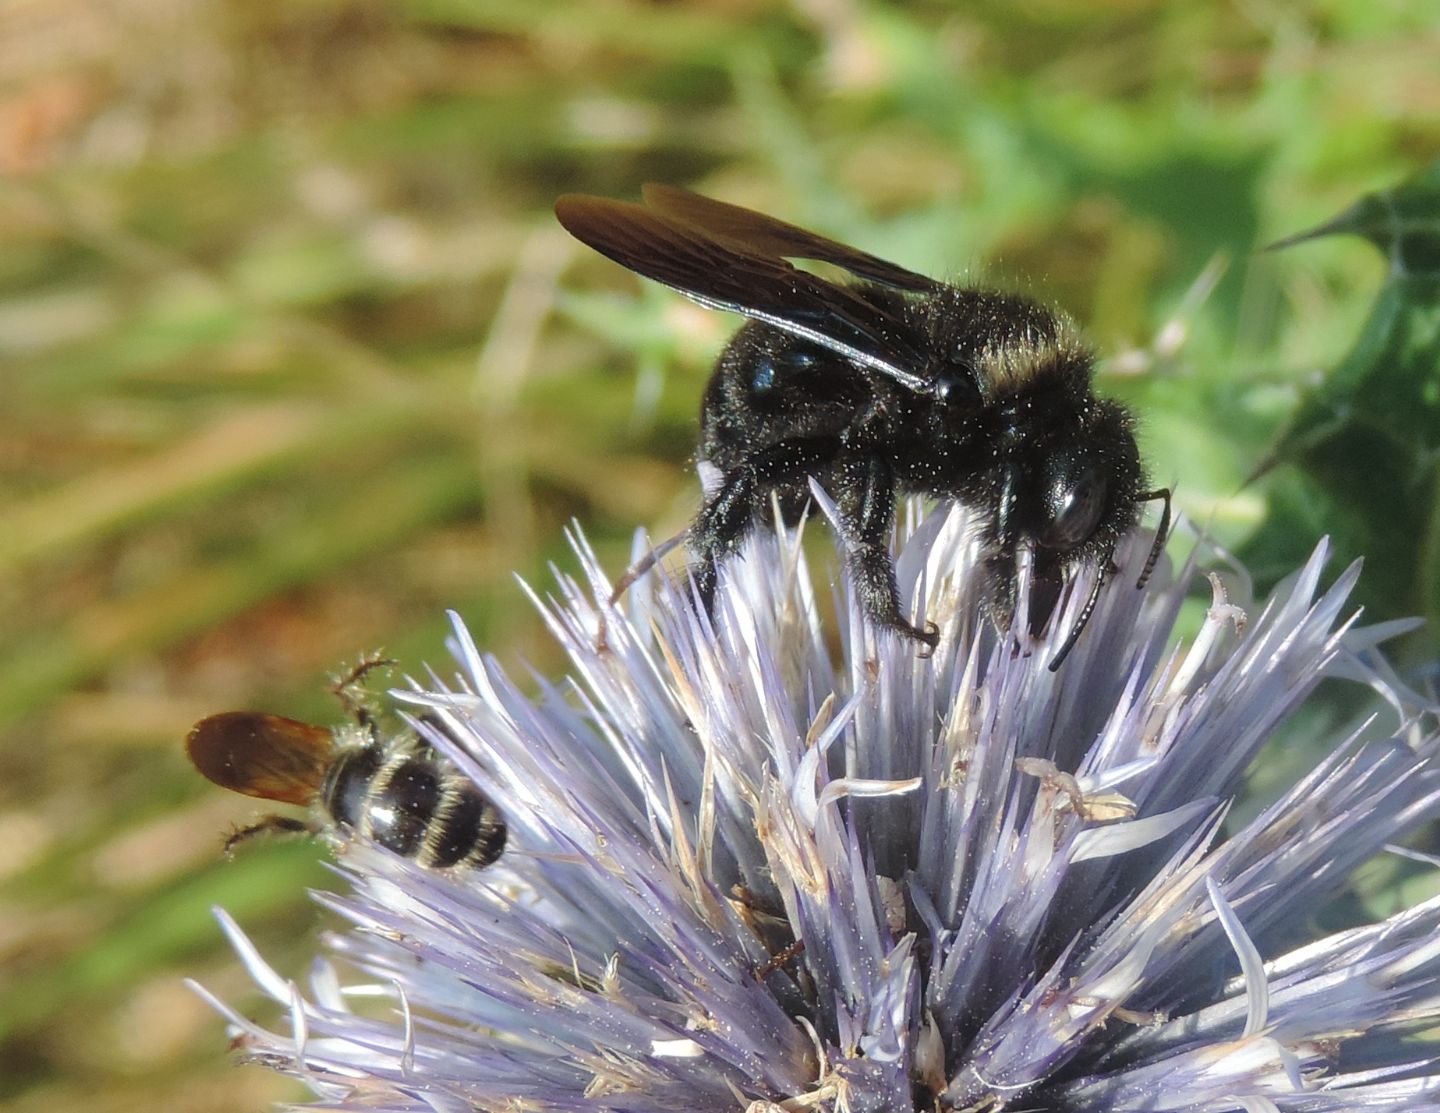 Xylocopa iris, maschio (Apidae) e Colpa quinquecincta, femmina (Scoliidae).